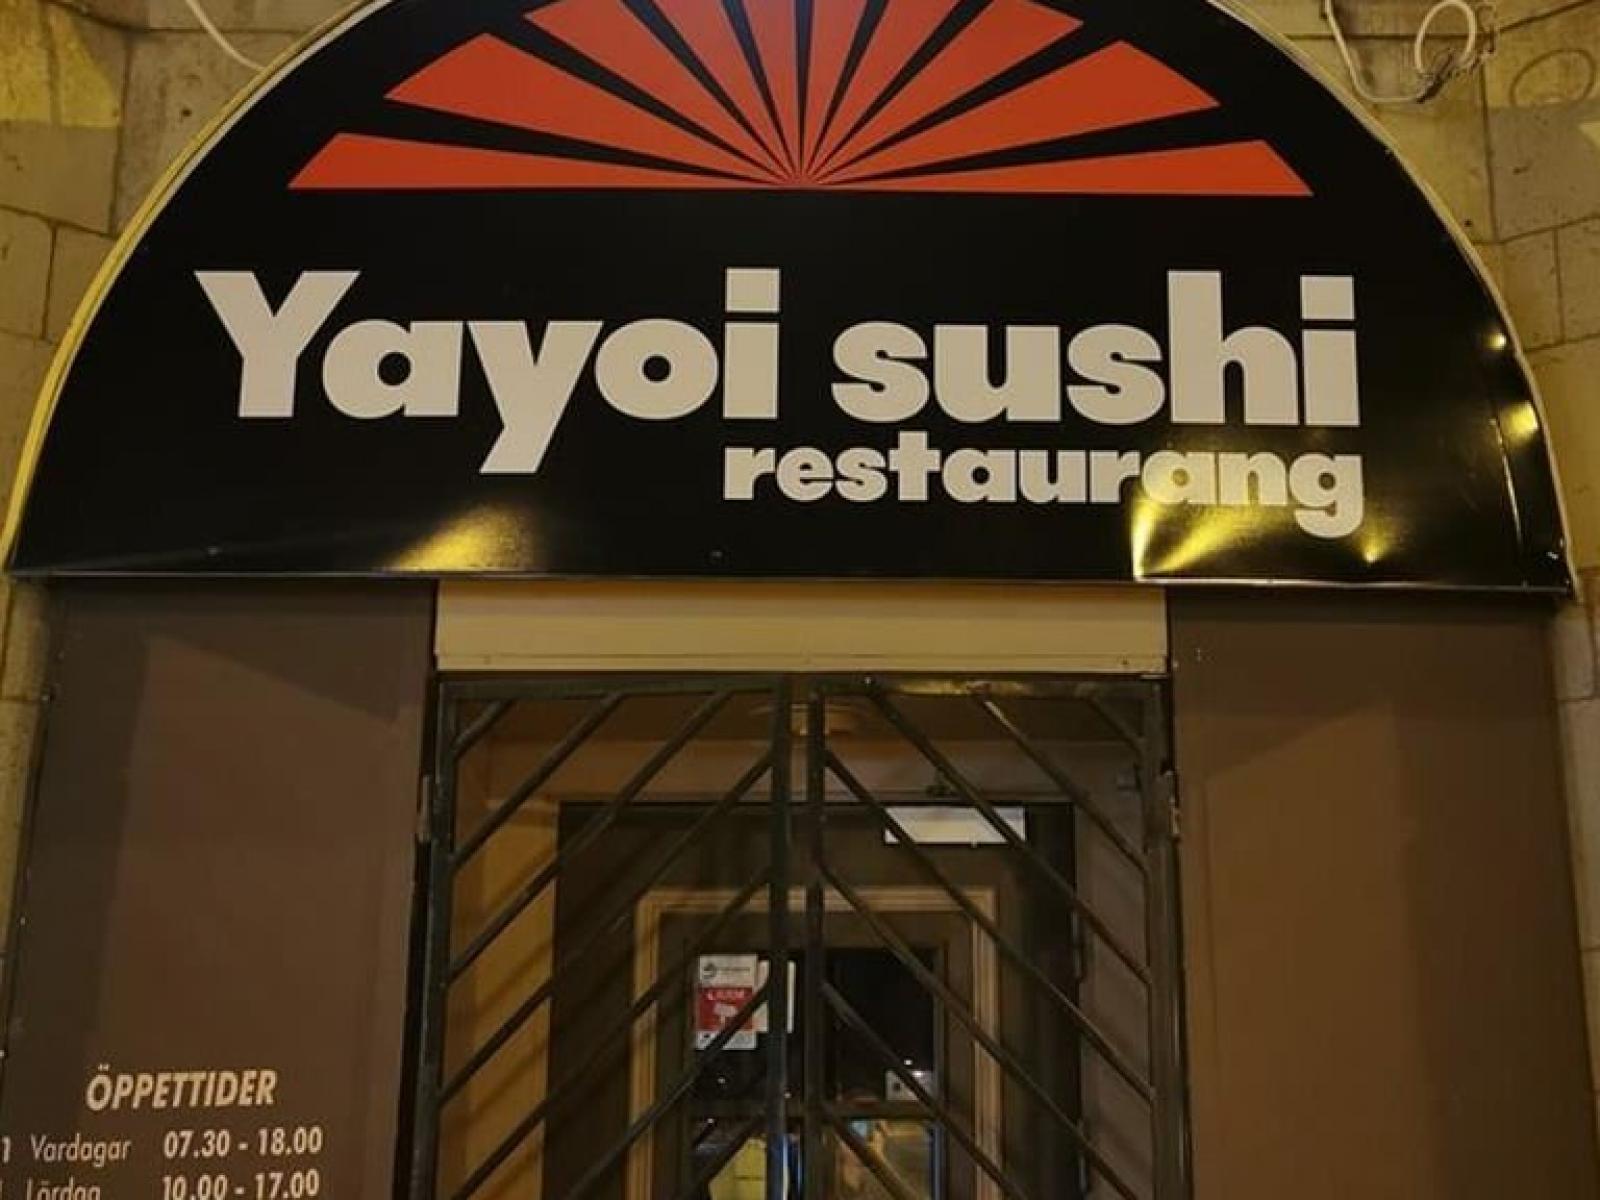 Yayoi Sushi